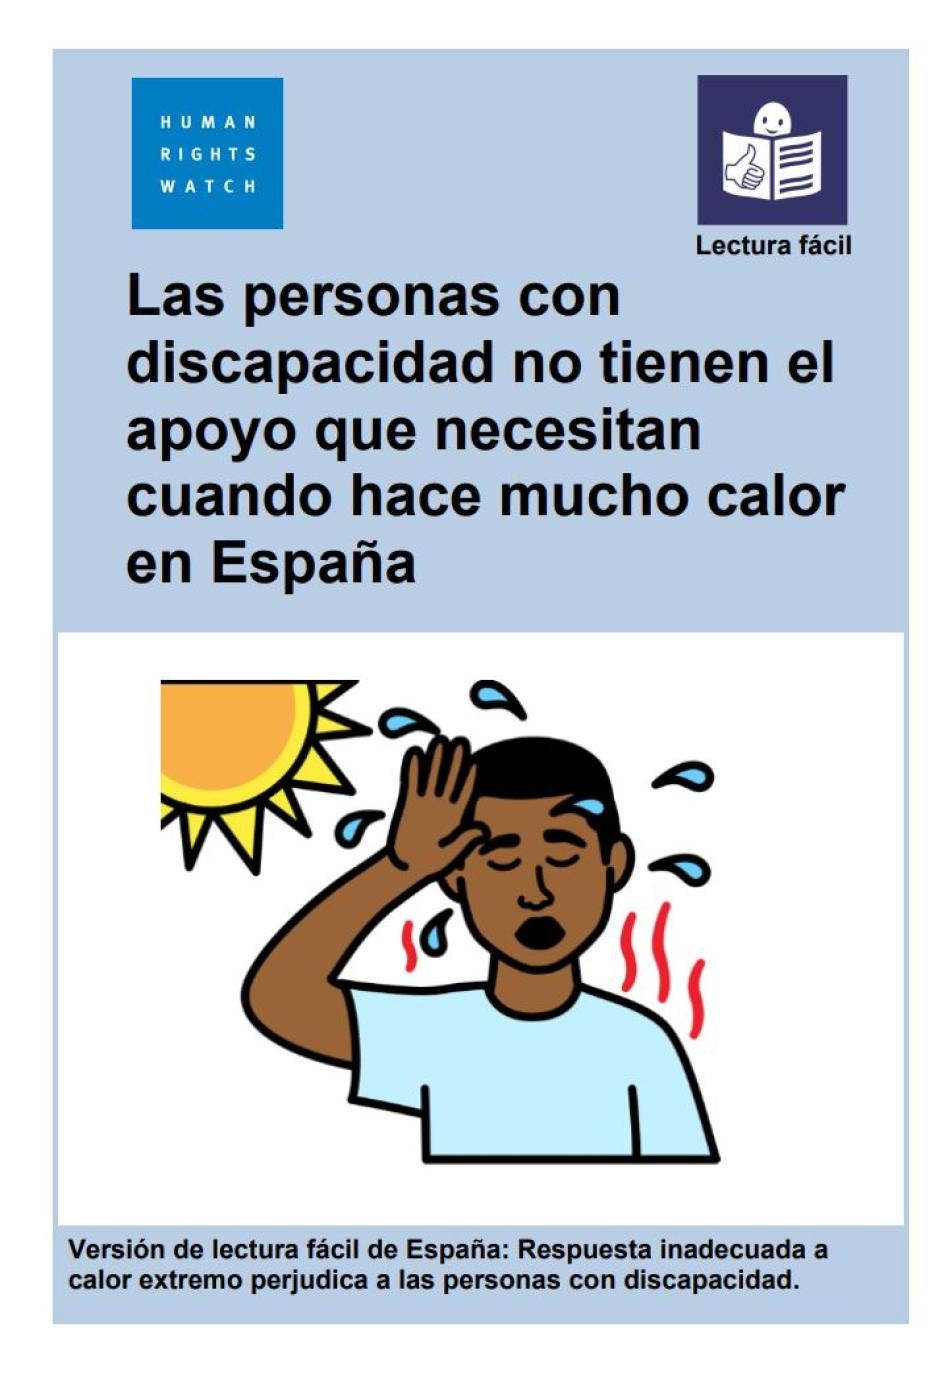 La portada de la versión de lectura fácil del informe. El título dice 'Las personas con discapacidad no tienen el apoyo que necesitan cuando hace mucho calor en España'.